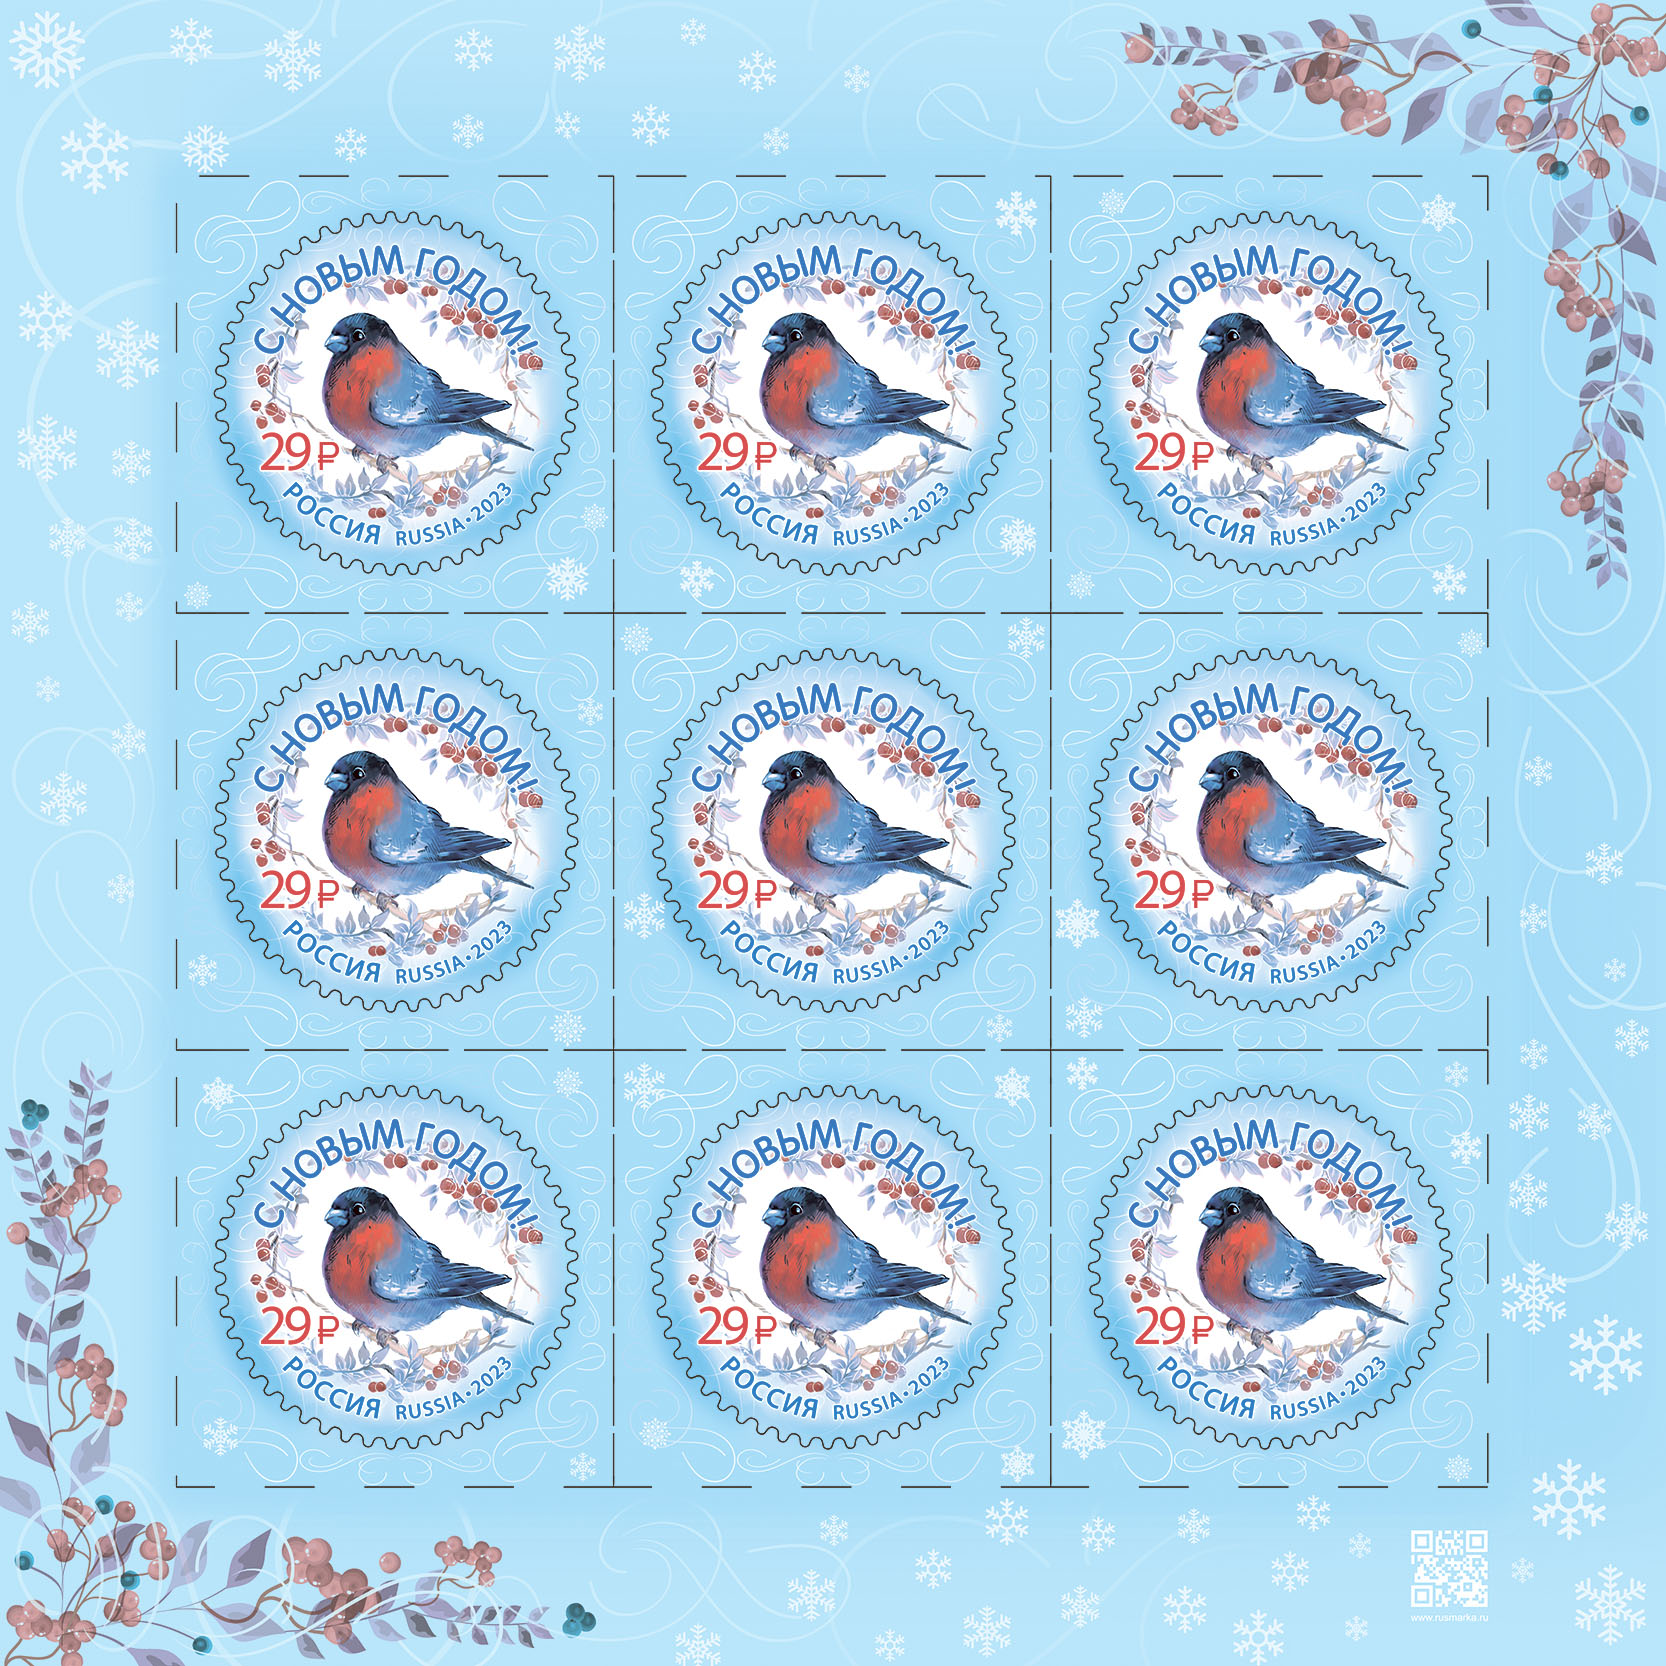 В почтовые отделения Вологодской области поступили новогодние марки.